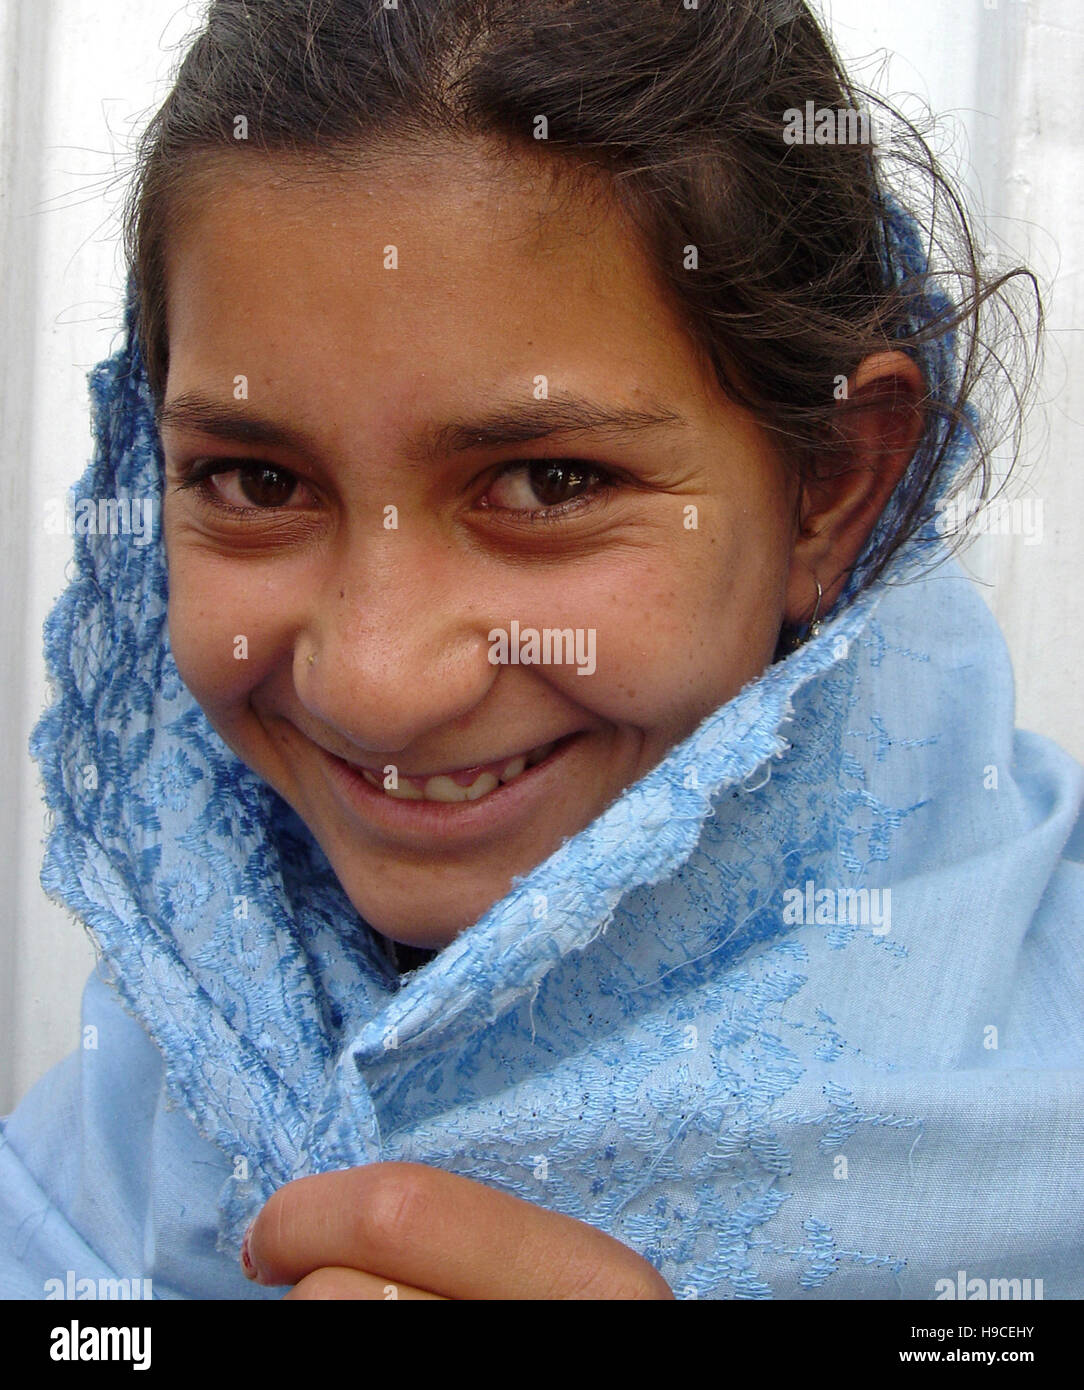 Il 31 maggio 2004 il ritratto di una giovane ragazza all'interno il Wazir Akbar Khan centro ortopedico nel nord di Kabul, Afghanistan. Foto Stock